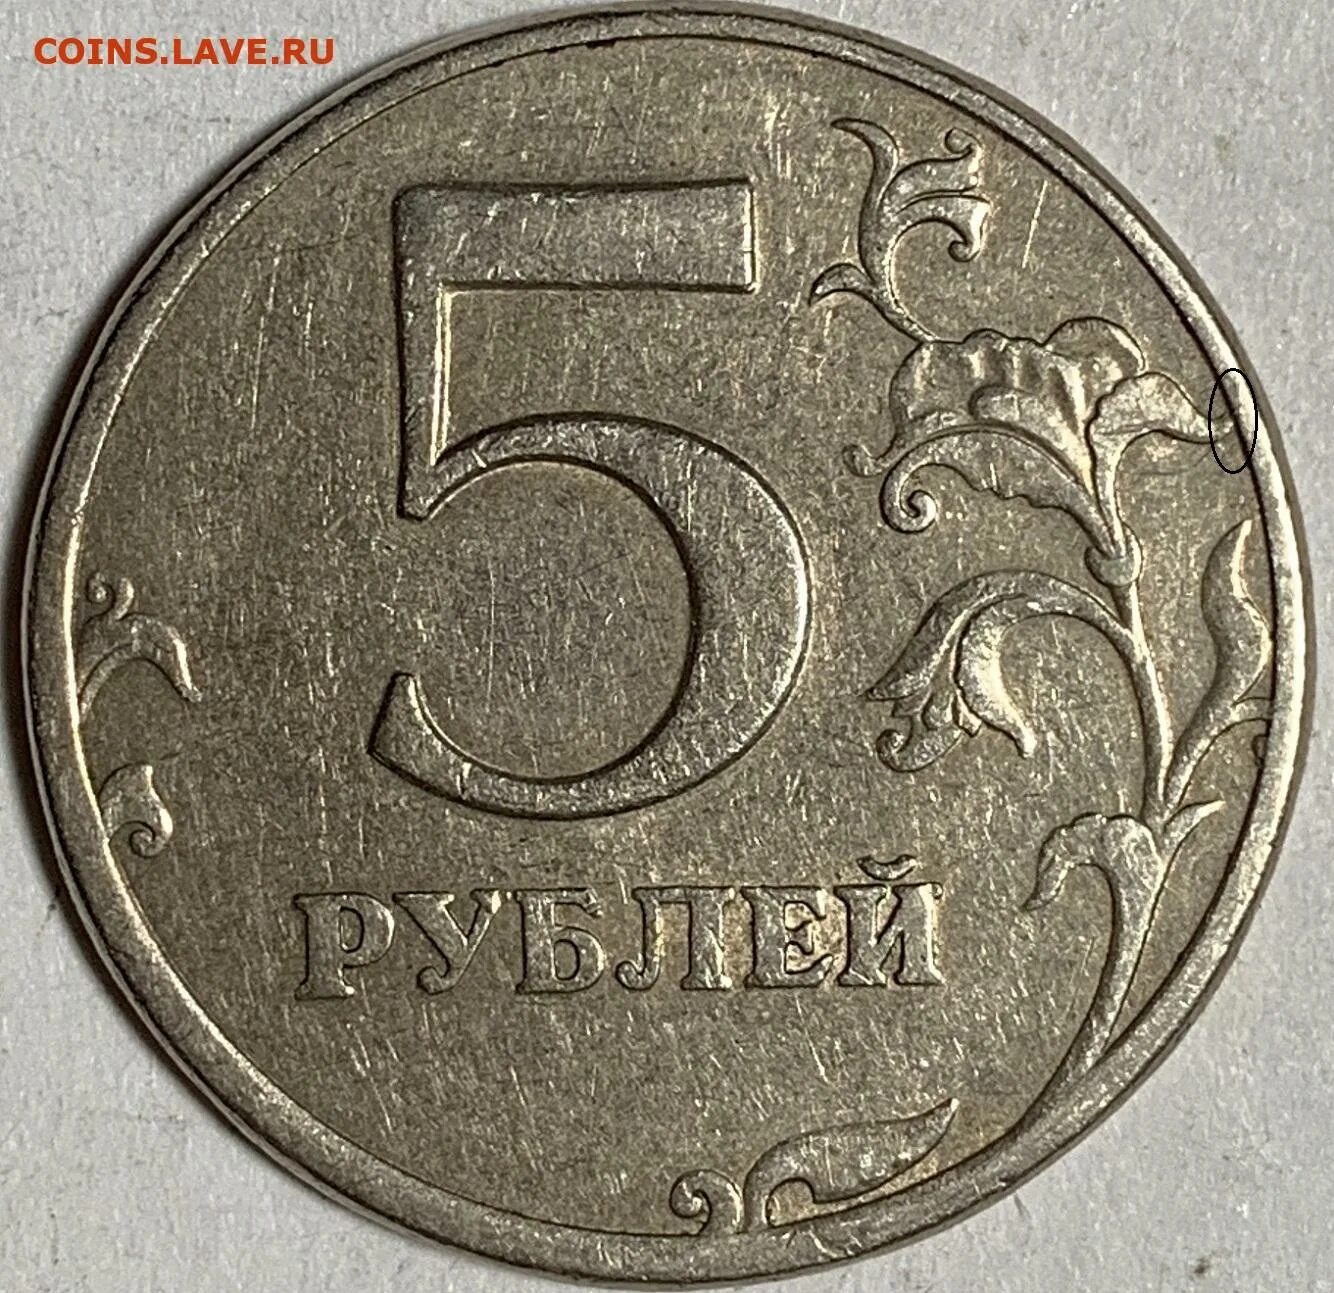 Вышли 5 рублей. 5 Рублей 1997 ММД. Редкие монеты 5 рублей 1997. 5 Рублей бумажные. 5 Рублей с двух сторон.